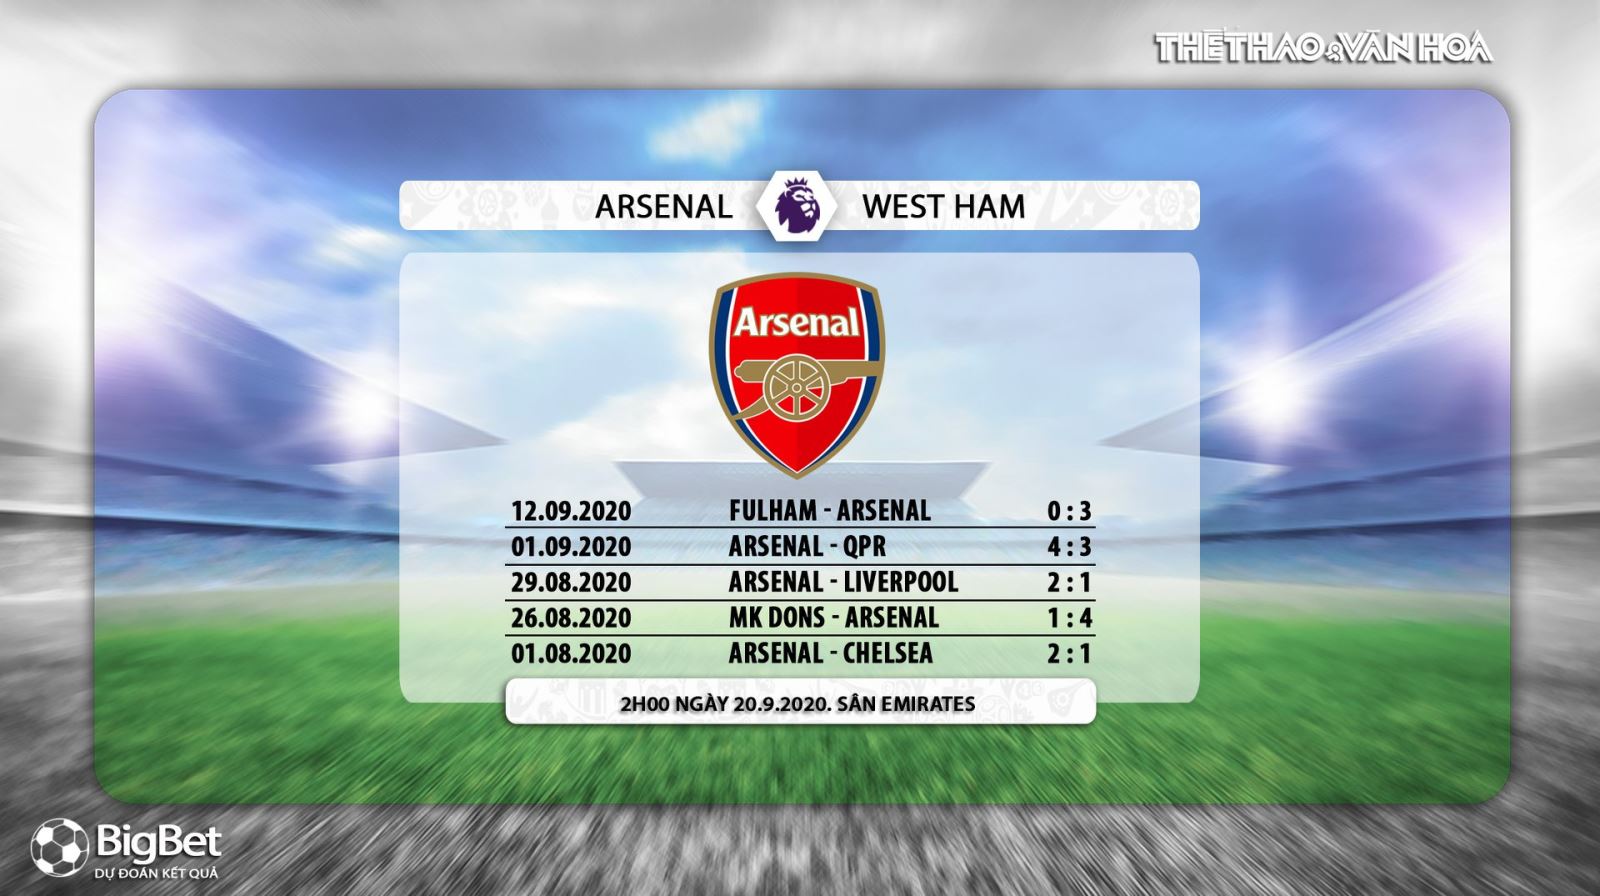 Arsenal vs West Ham, Arsenal, West Ham, trực tiếp bóng đá, nhận định bóng đá, kèo bóng đá, kèo Arsenal vs West Ham, nhận định bóng đá Arsenal vs West Ham, nhận định Arsenal vs West Ham